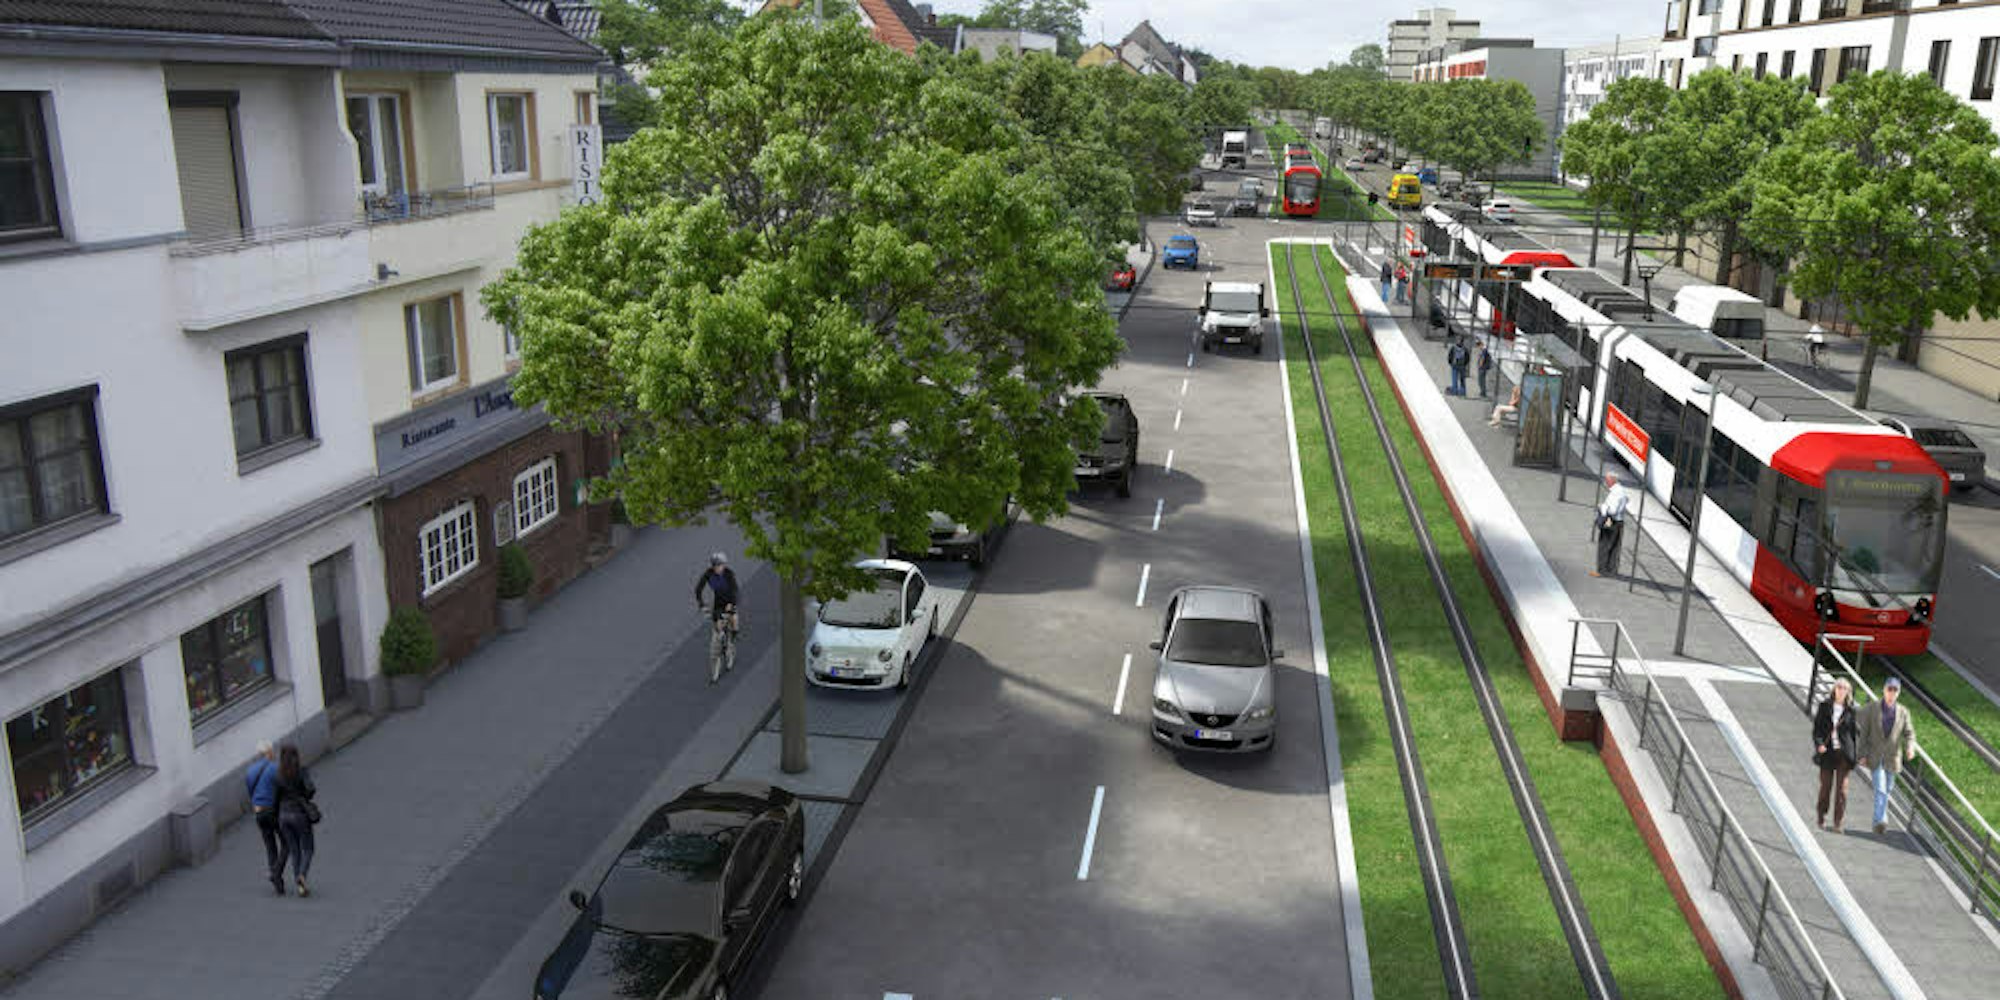 Die Haltestelle Ahrweilerstraße nach dem Umbau: Die Bonner Straße soll mit einem Allee-Charakter ein attraktiveres Einfallstor nach Köln werden.